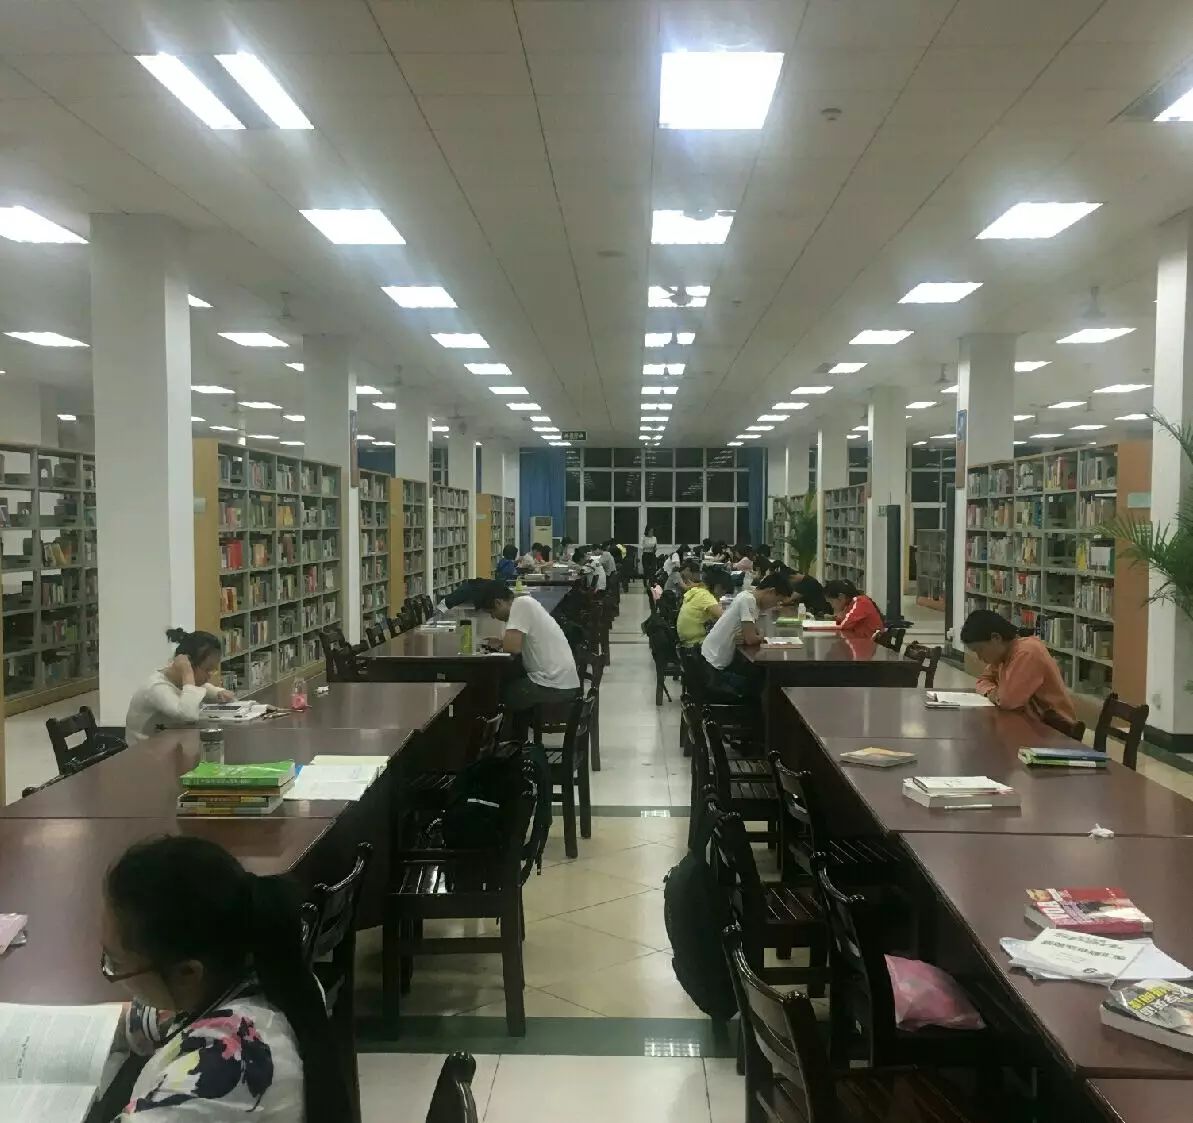 日前,武昌首义学院图书馆给考研学生"定制"了598个实名制座位的消息